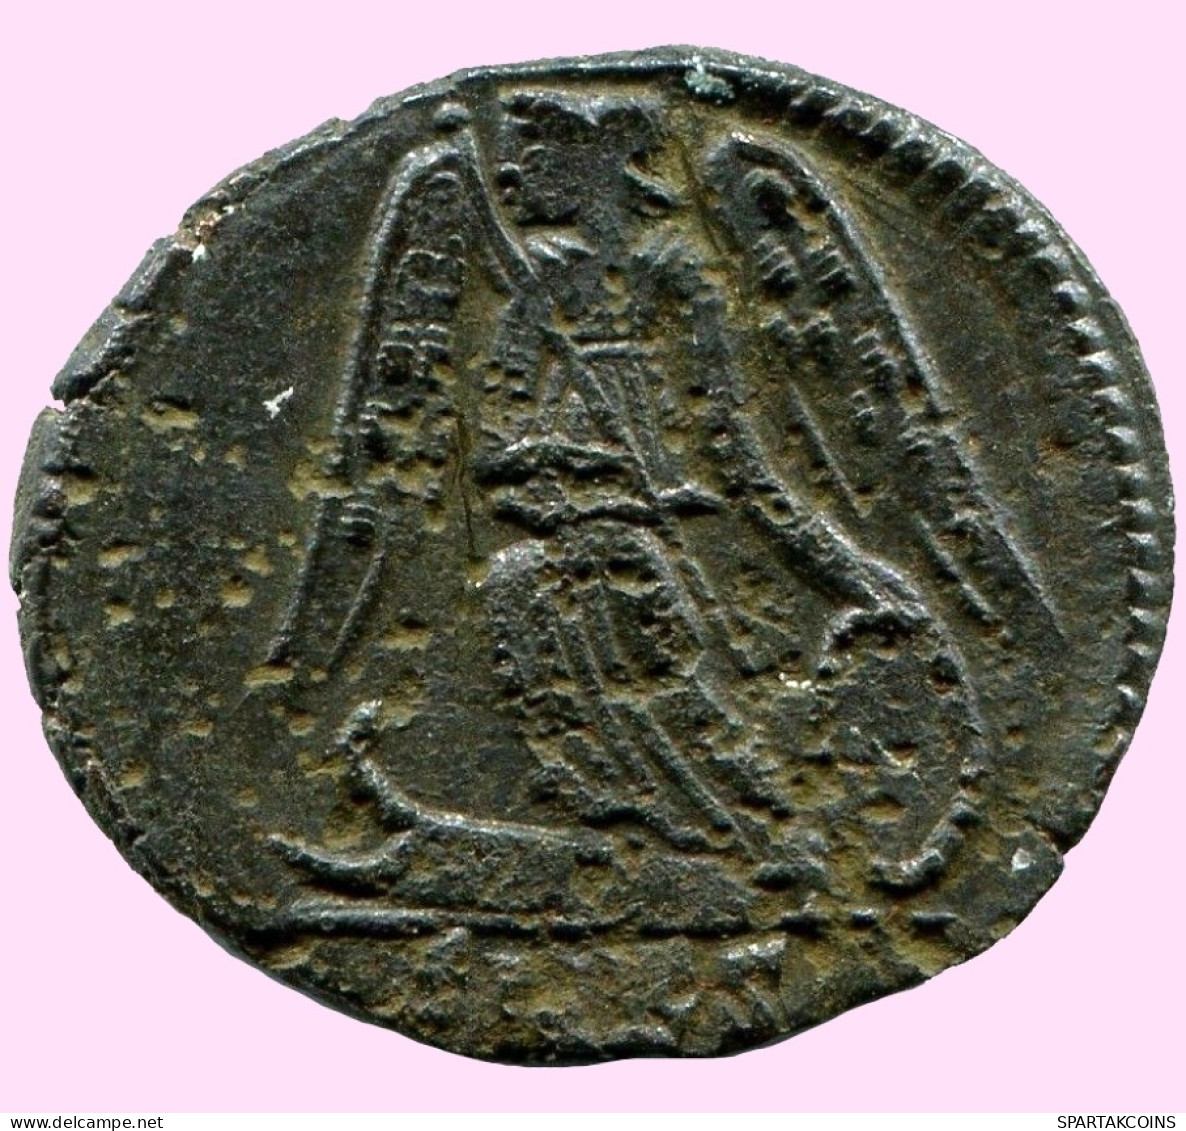 CONSTANTINUS I CONSTANTINOPOLI FOLLIS Ancient ROMAN Coin #ANC12019.25.U.A - L'Empire Chrétien (307 à 363)